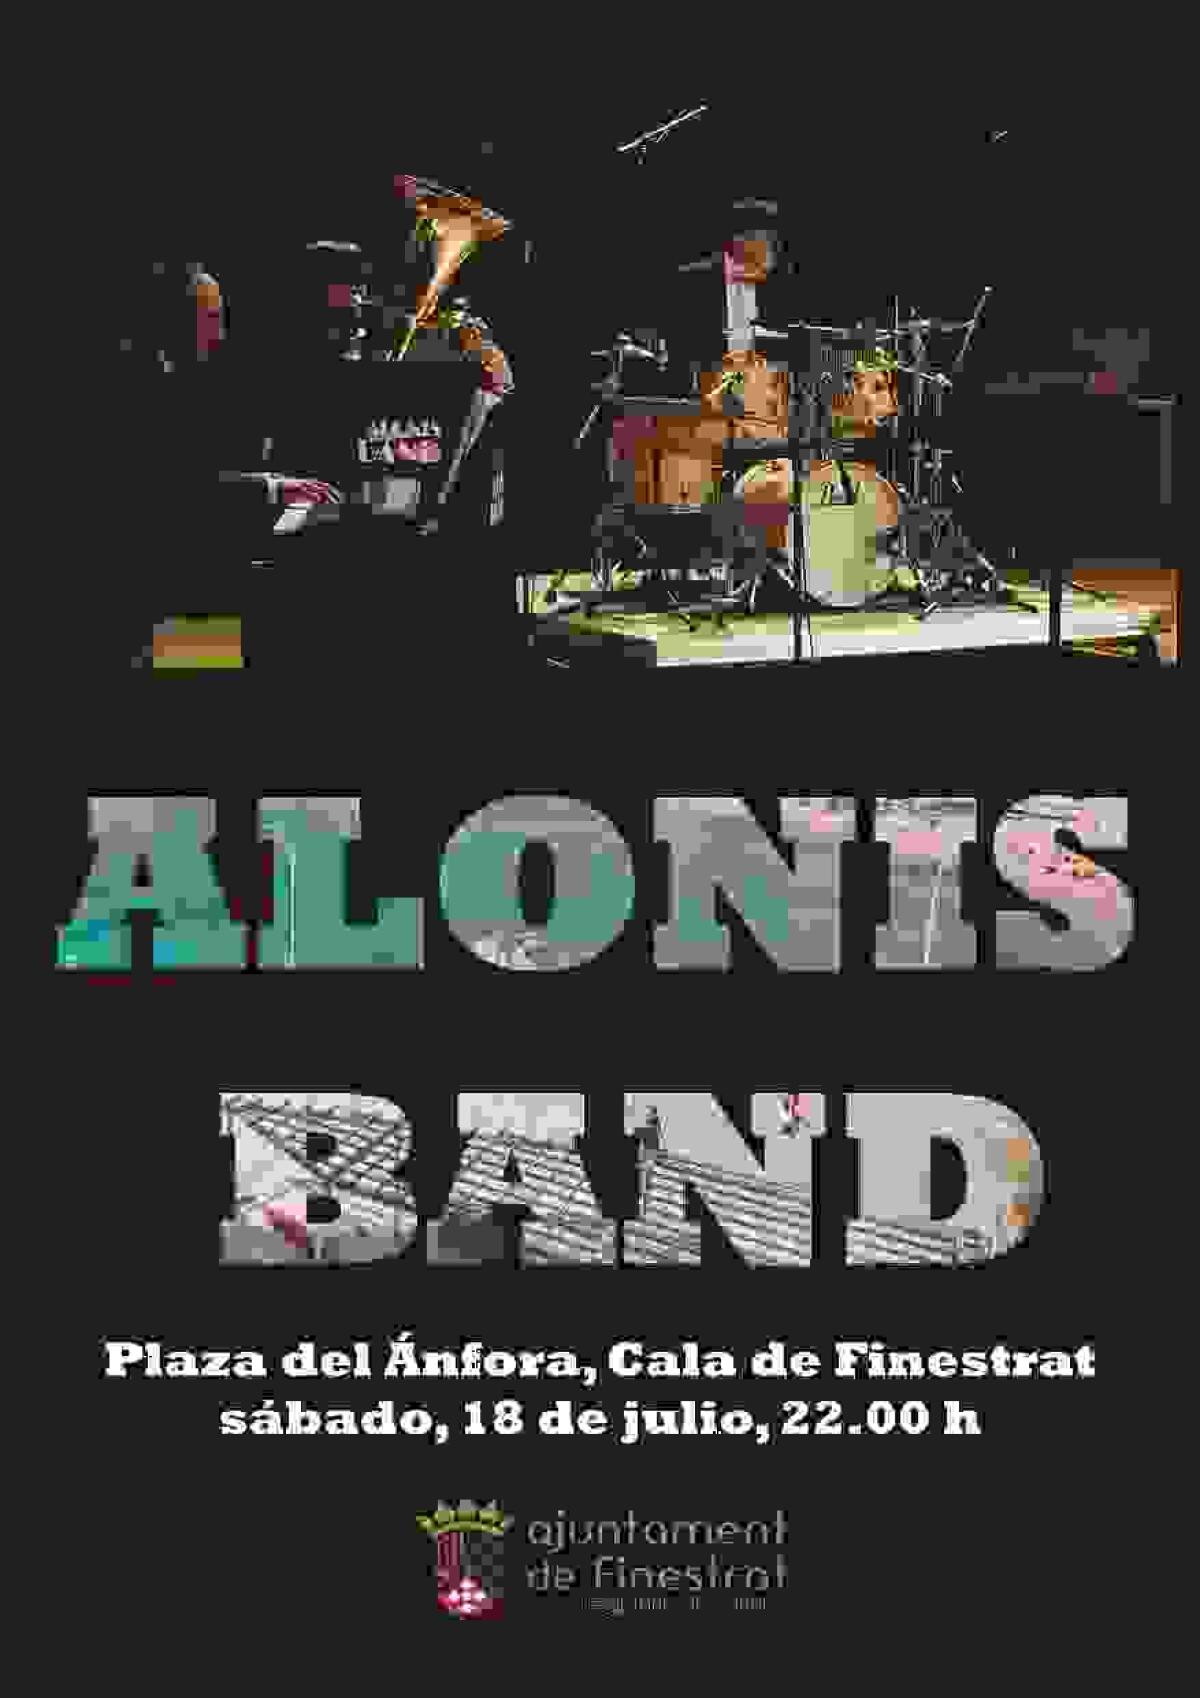 Hoy empiezan los eventos culturales de verano en Finestrat con el concierto de jazz de “ALONIS BAND”.